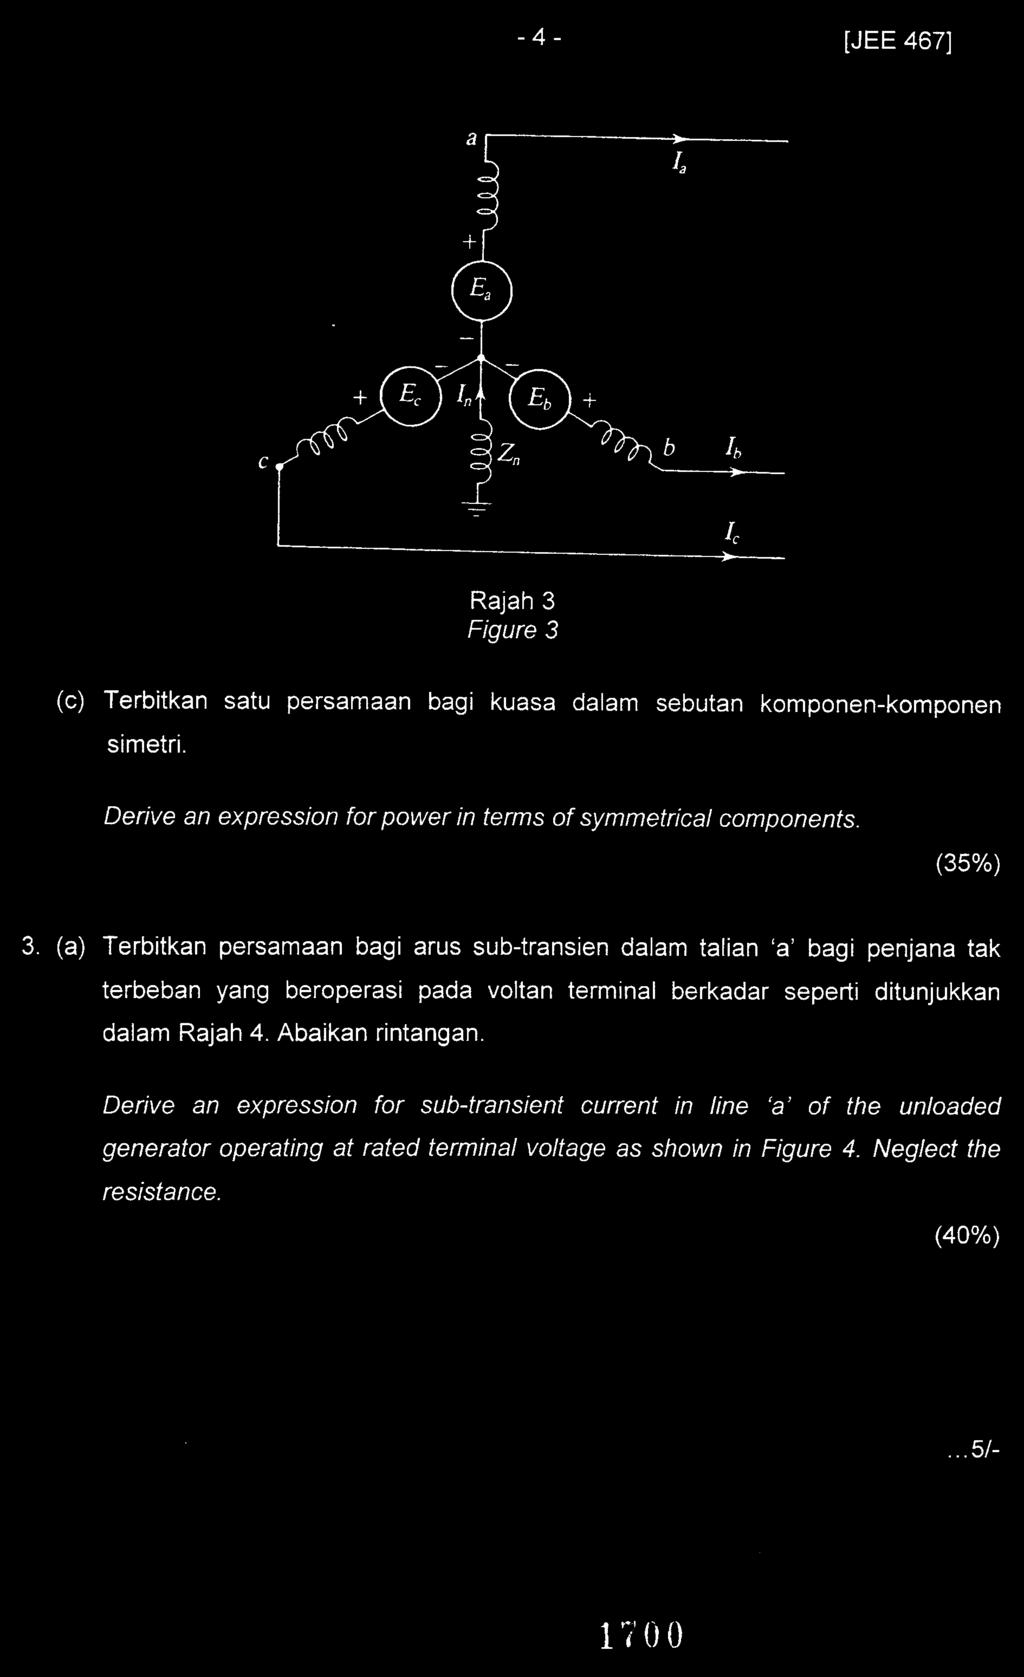 (a) Terbitkan persamaan bagi arus sub-transien dalam talian 'a' bagi penjana tak terbeban yang beroperasi pada voltan terminal berkadar